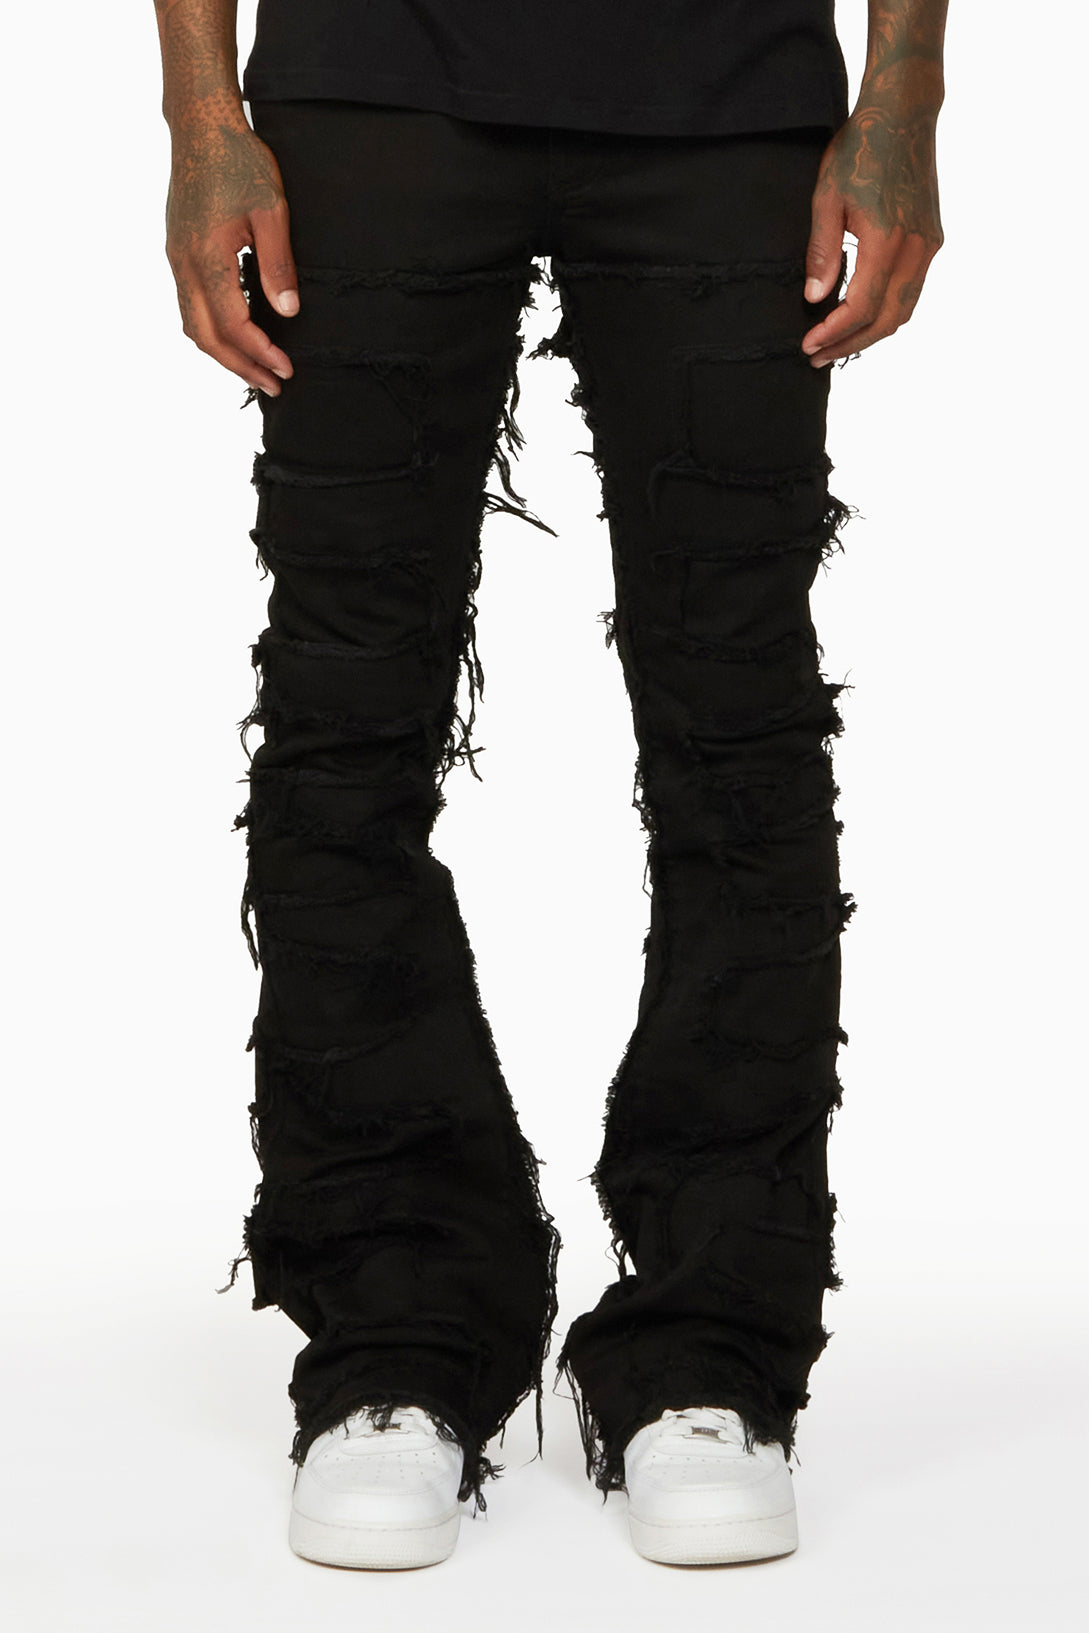 Rockstar Original - Sniper Black Super Stacked Flare Jeans (Black)